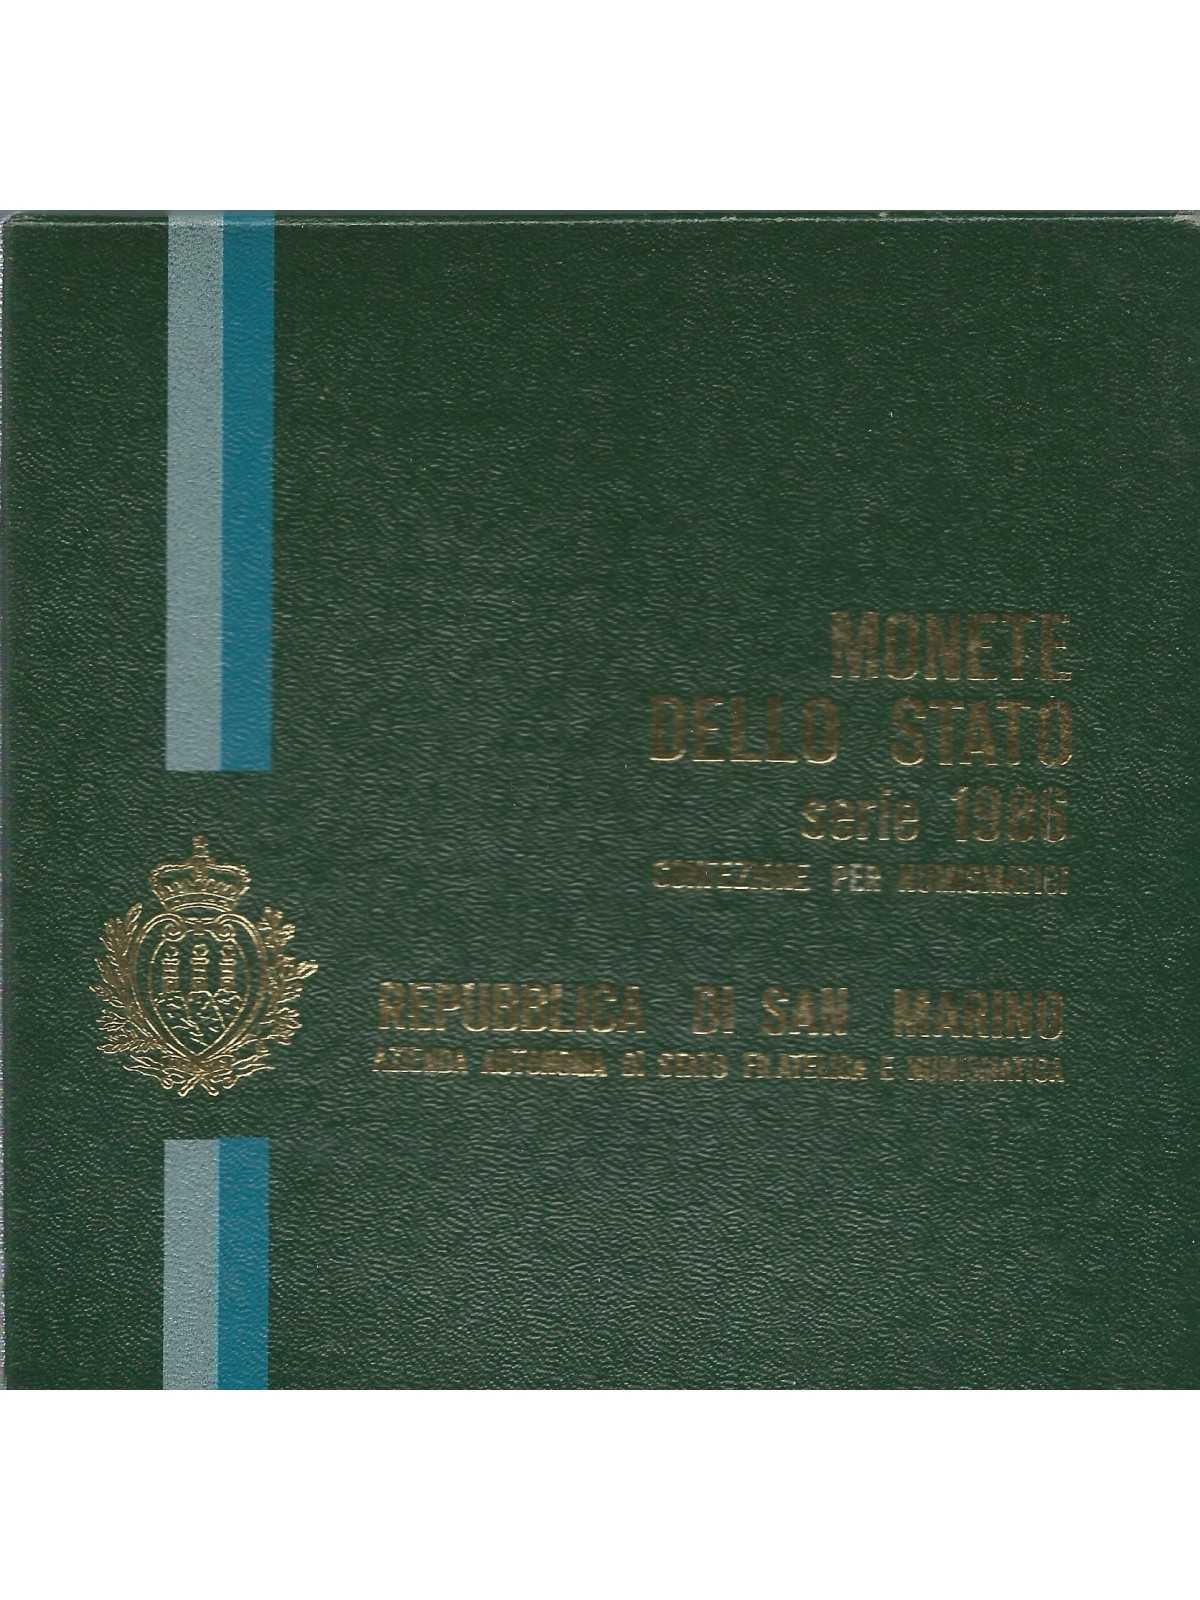 1986 SAN MARINO DIVISIONALE EVOLUZIONE TECNOLOGICA 9 MONETE FDC MF24300